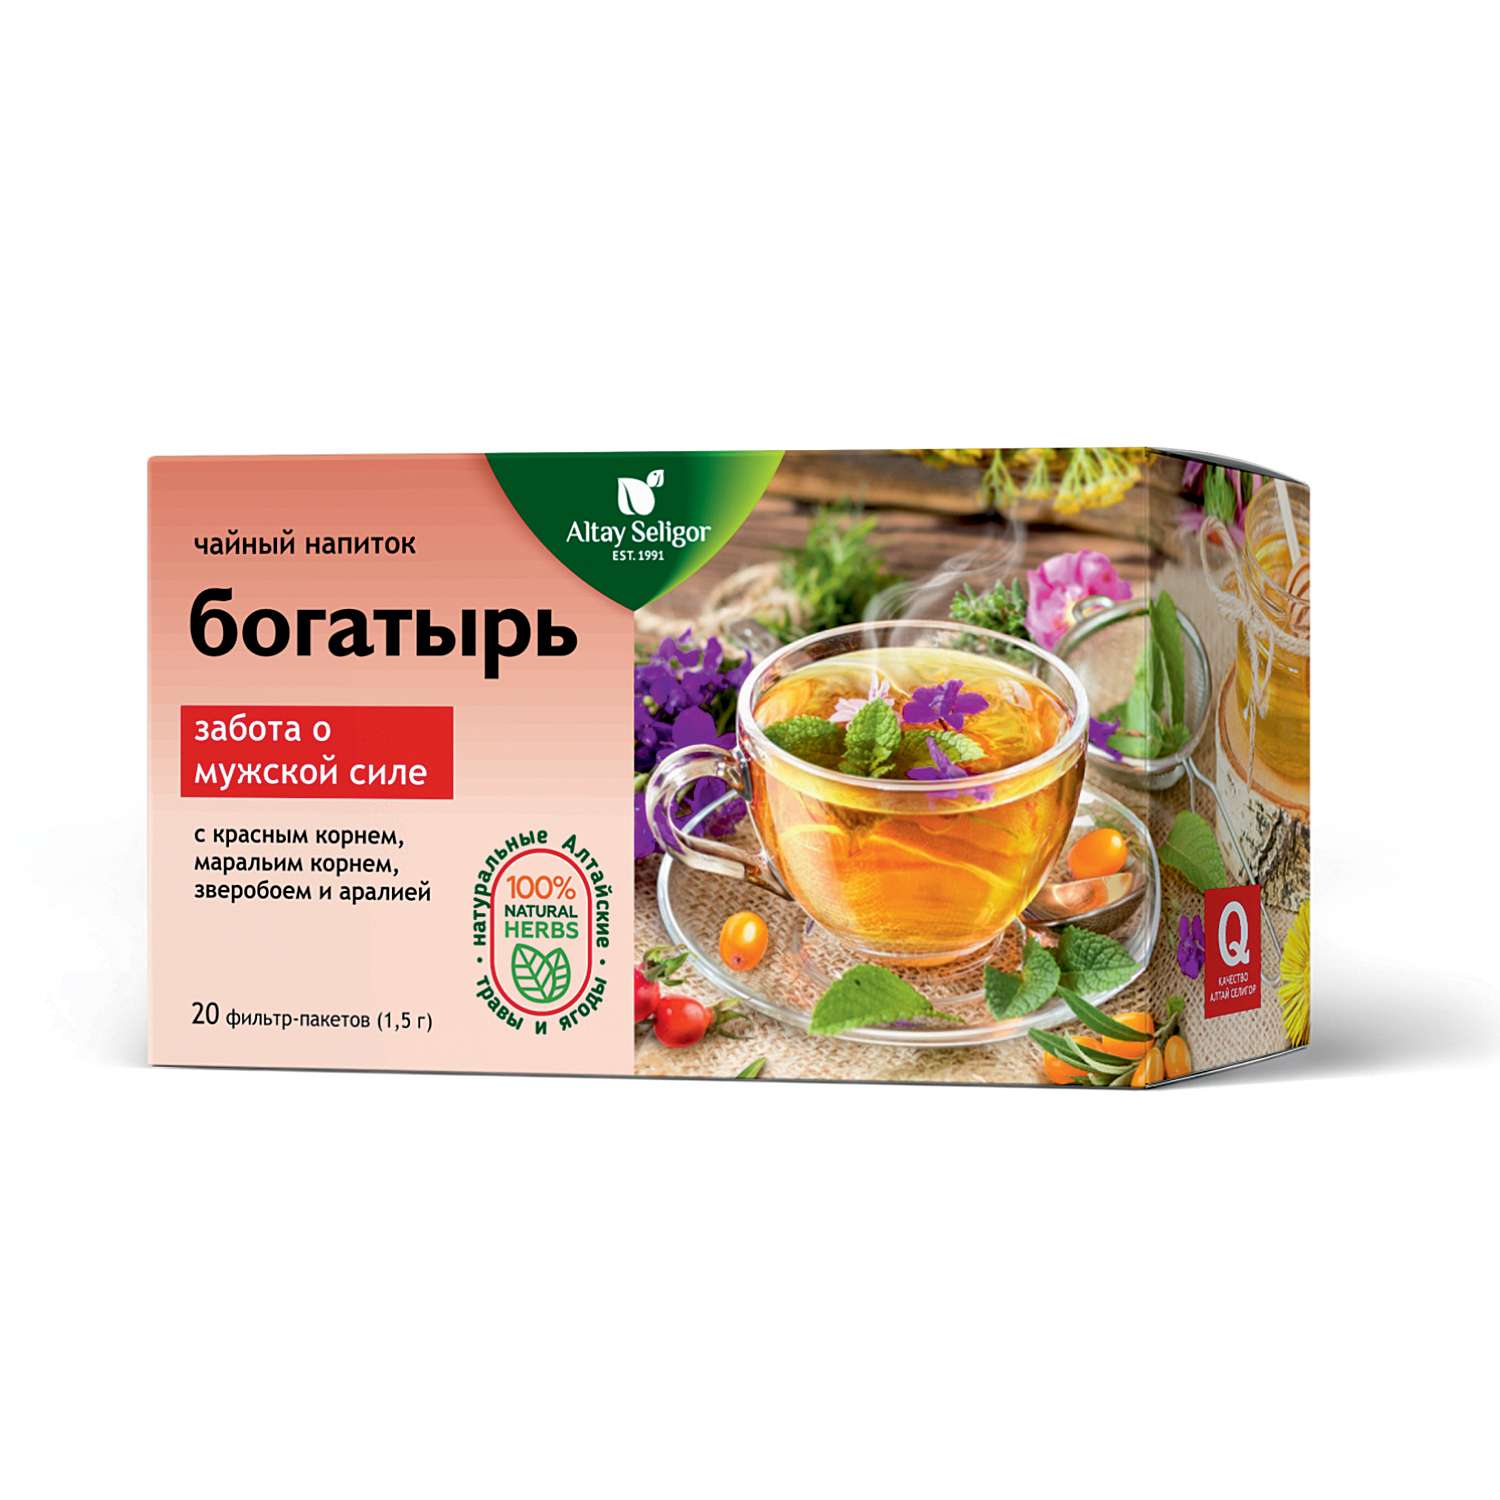 Напиток чайный Алтай-Селигор Богатырь мужской 20пакетиков - фото 1